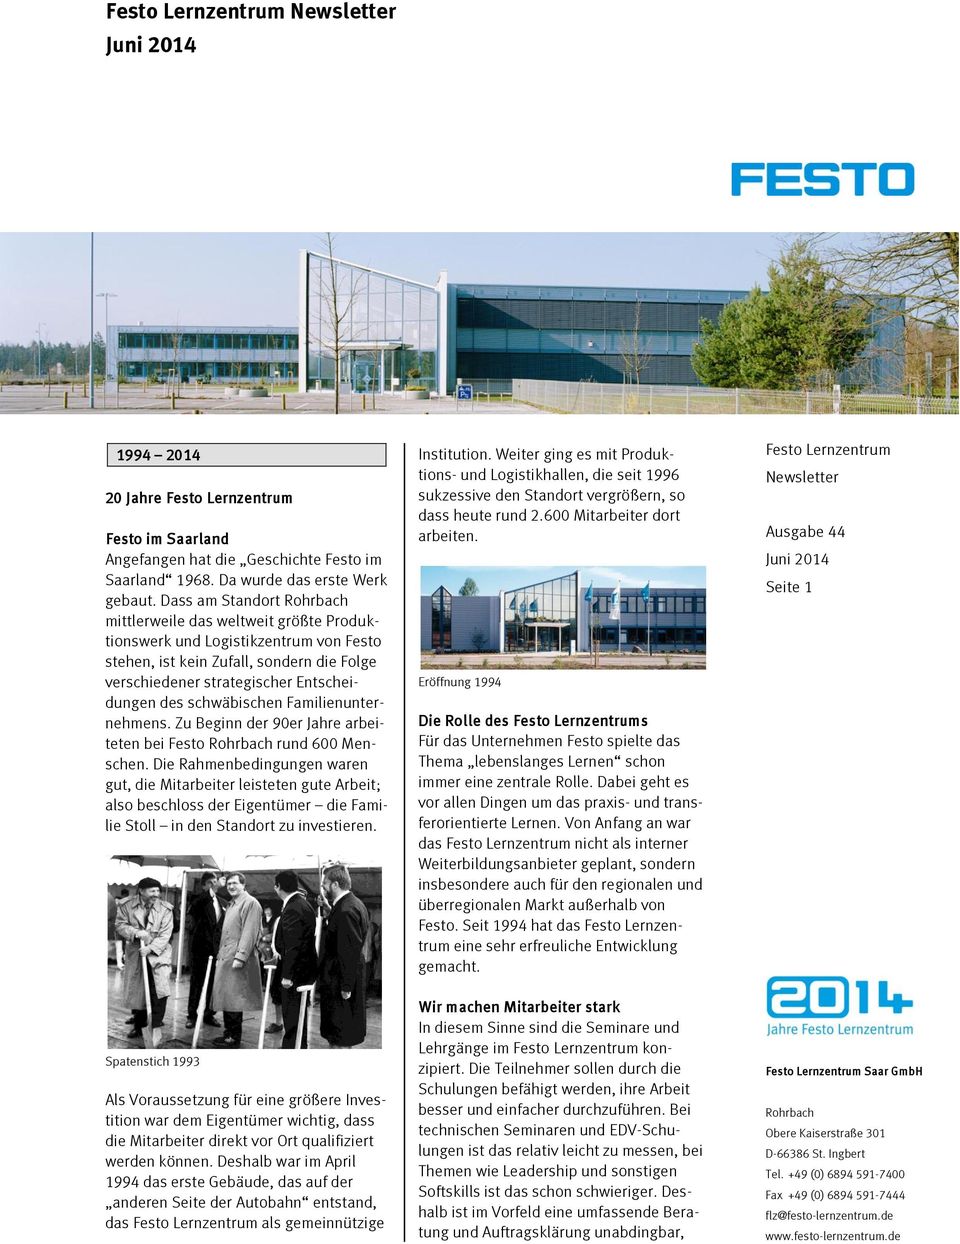 schwäbischen Familienunternehmens. Zu Beginn der 90er Jahre arbeiteten bei Festo Rohrbach rund 600 Menschen.